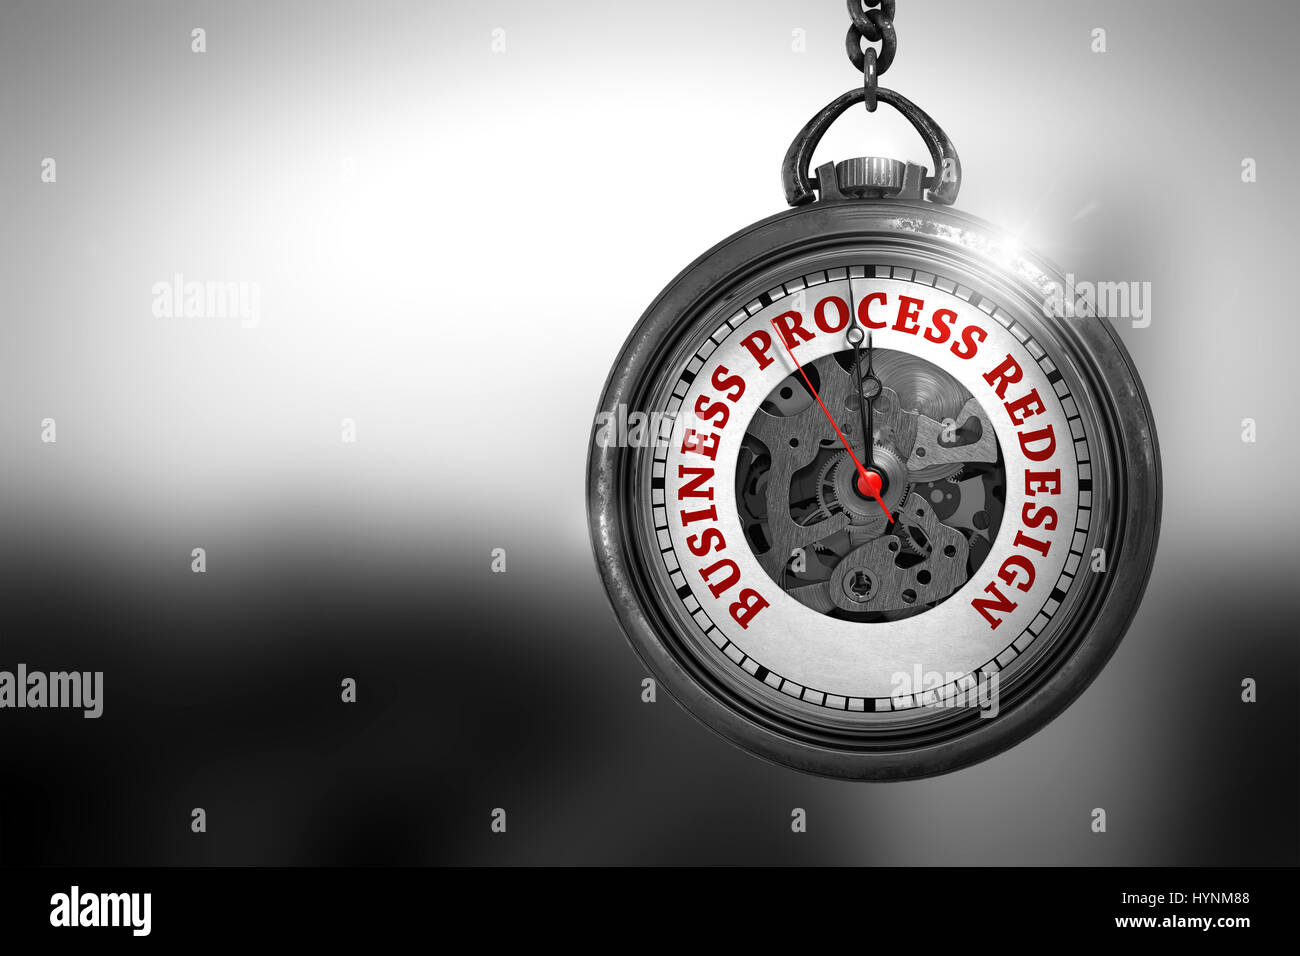 Business Process Redesign auf Taschenuhr. 3D Illustration. Stockfoto